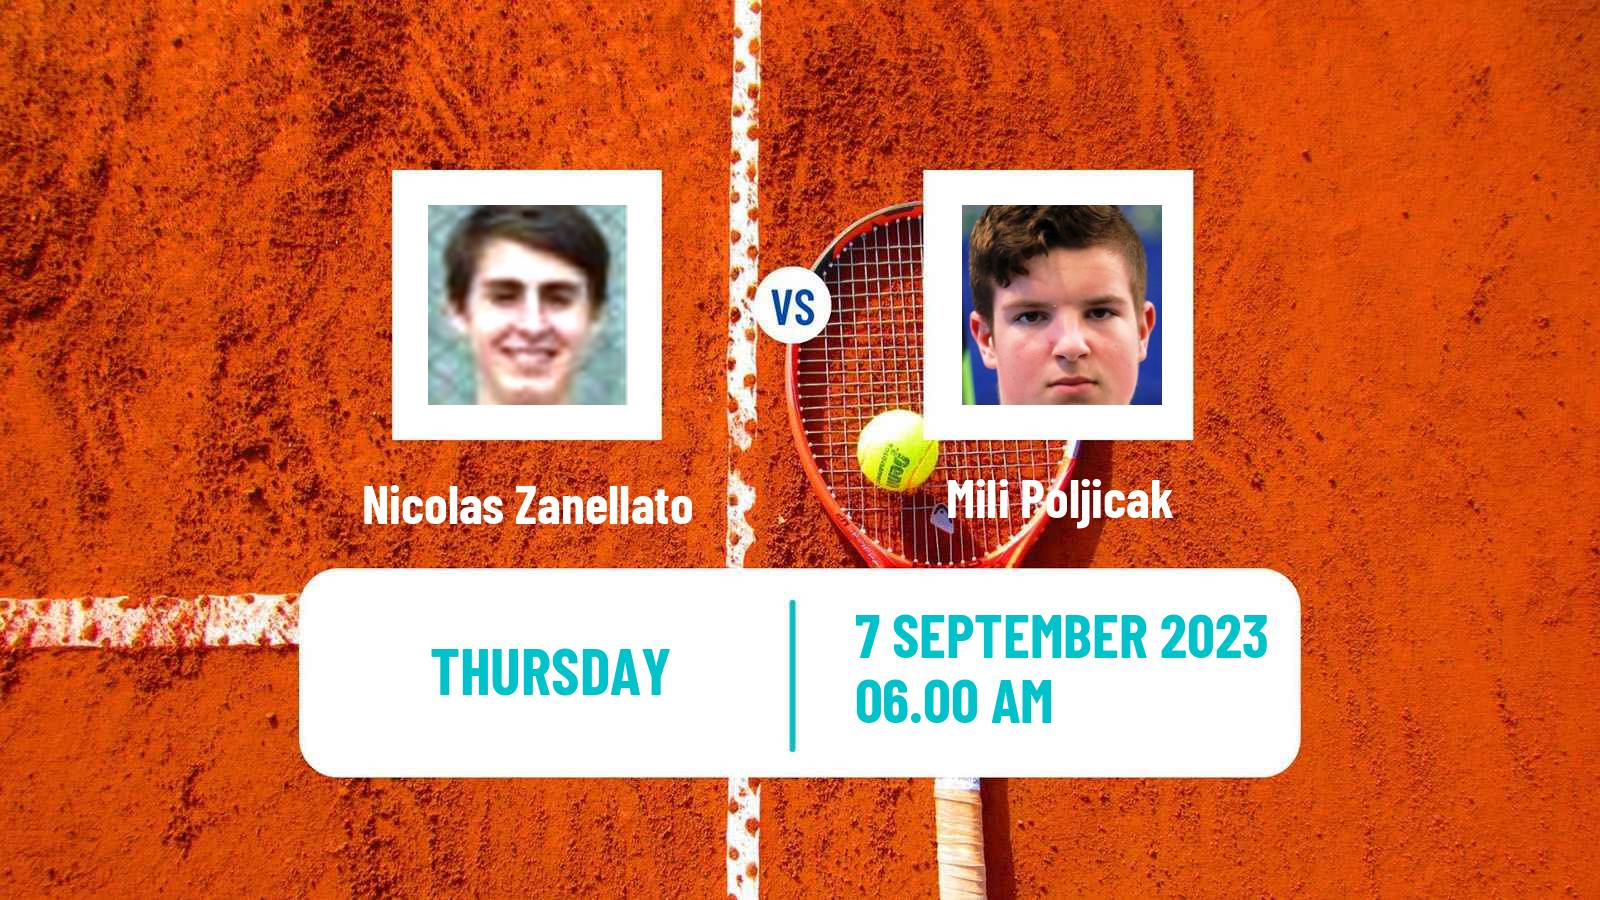 Tennis ITF M25 MarIBOr 2 Men Nicolas Zanellato - Mili Poljicak